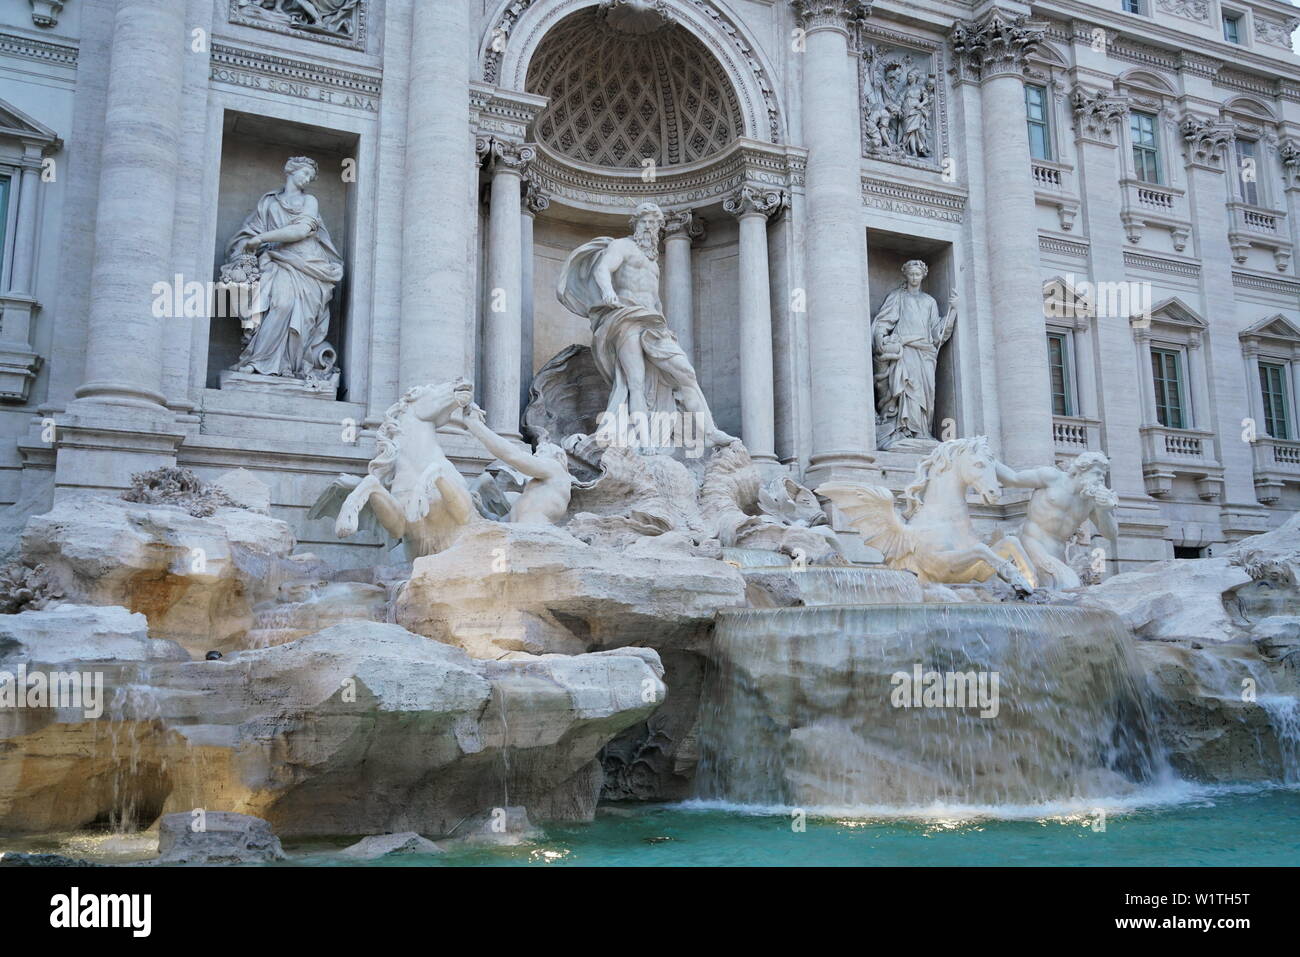 Famoso e uno dei più bella fontana di Roma - Fontana di Trevi (Fontana di Trevi). Italia Foto Stock